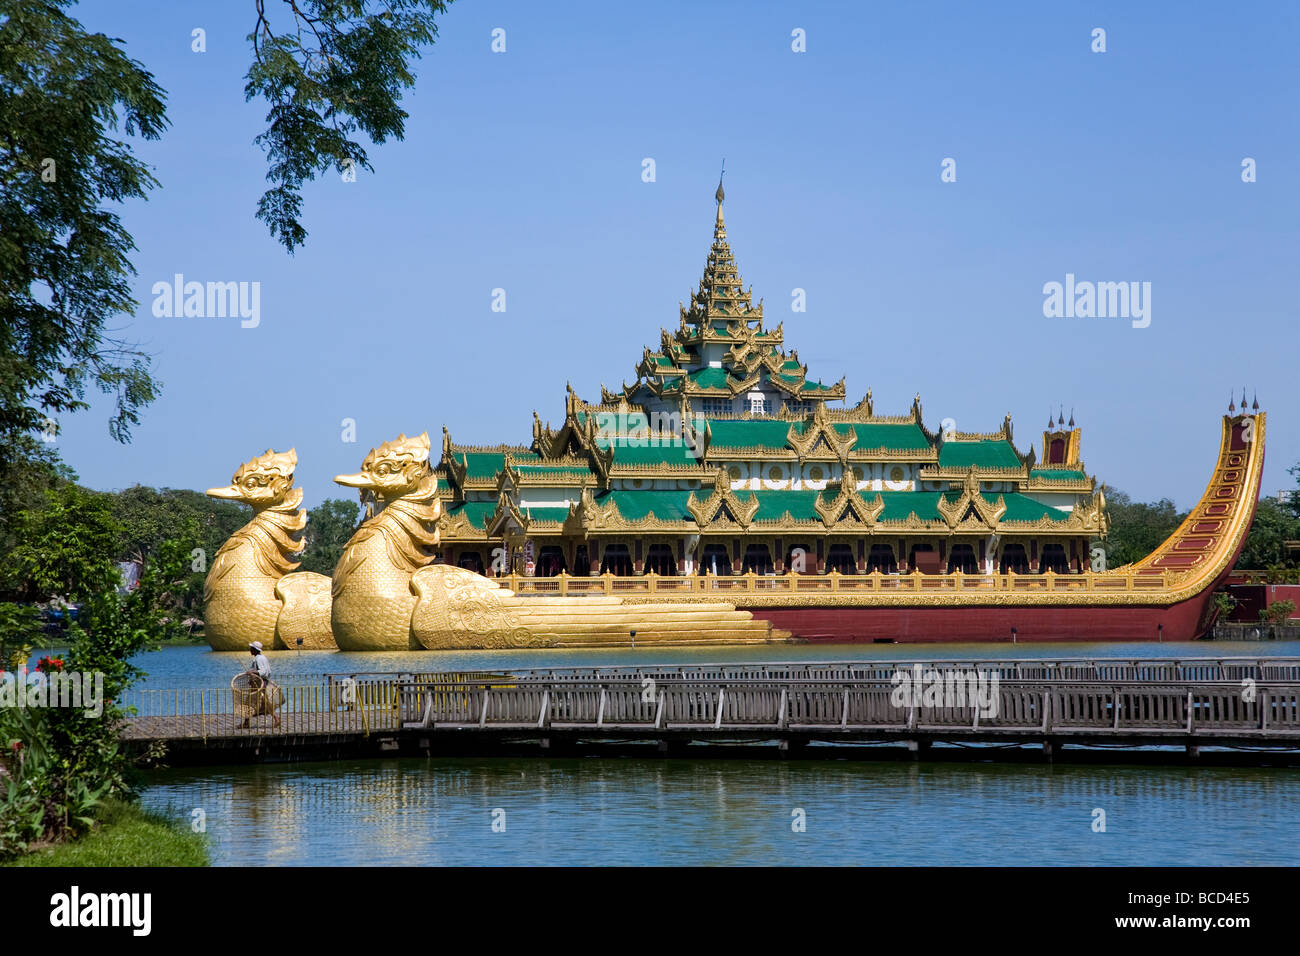 Karaweik (béton reproduction d'une barge royale). Le Lac Kandawgyi. Yangon. Myanmar Banque D'Images